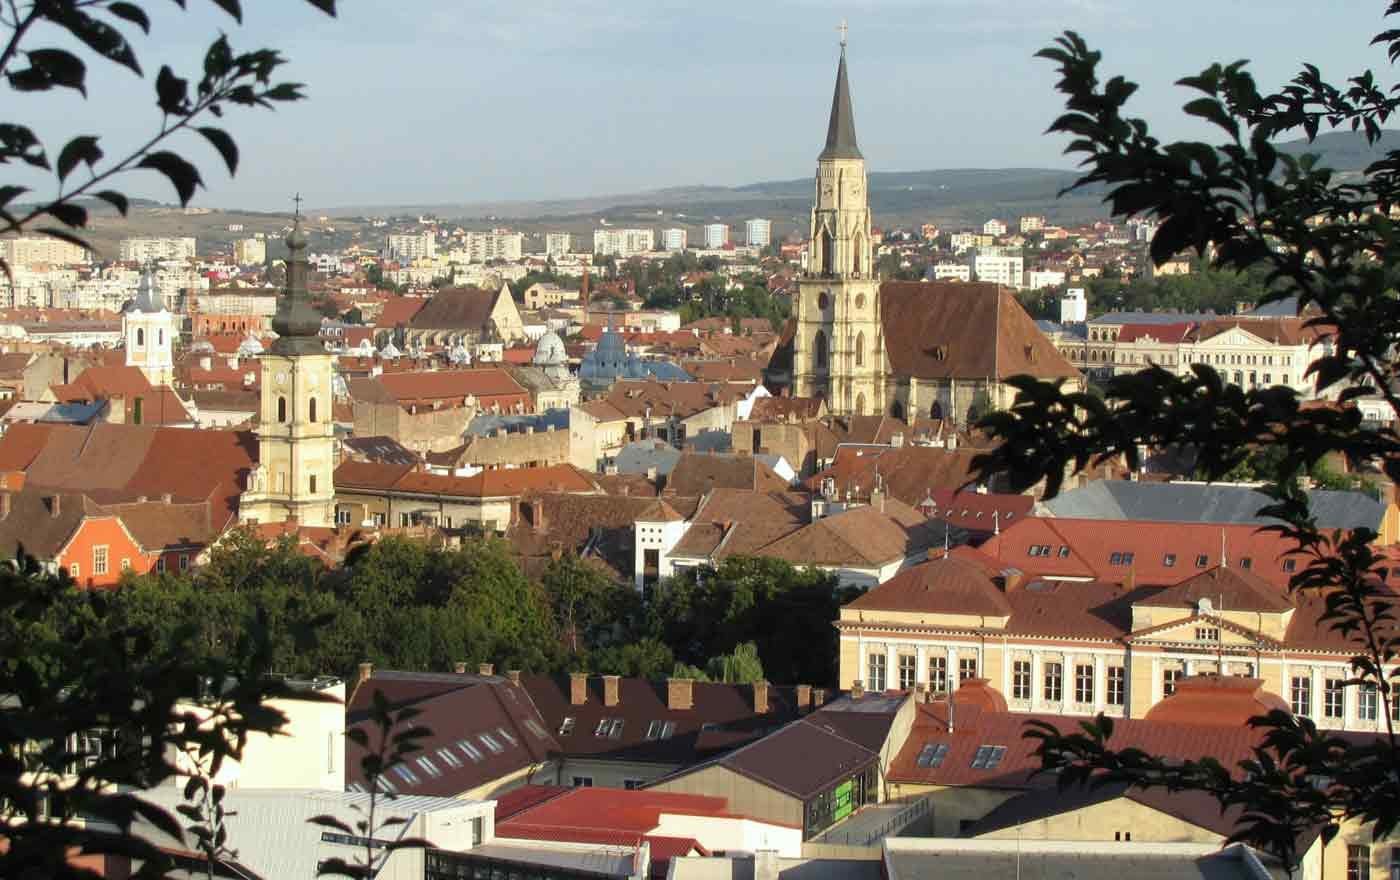 Die neubearbeitete Fassung von Werner Schulzes "LEID+HOFFNUNG" kommt im siebenbürgischen Cluj-Napoca (Klausenburg) zur Erstaufführung. Foto: wikimedia/Ana Maria Catalina